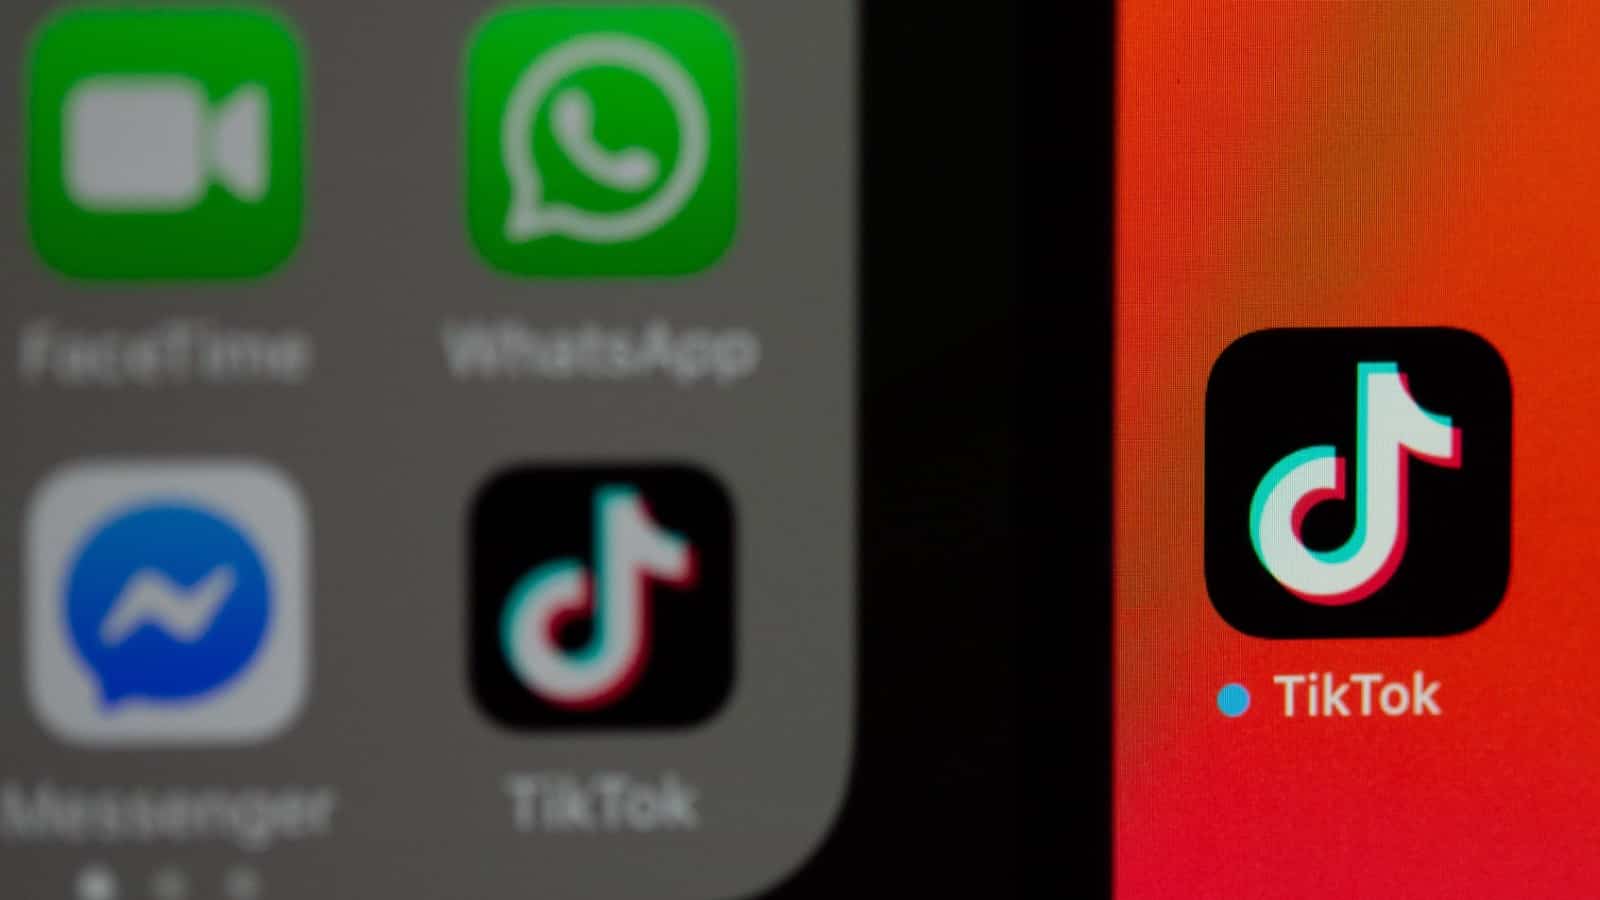 TikTok logo pn a phone screen